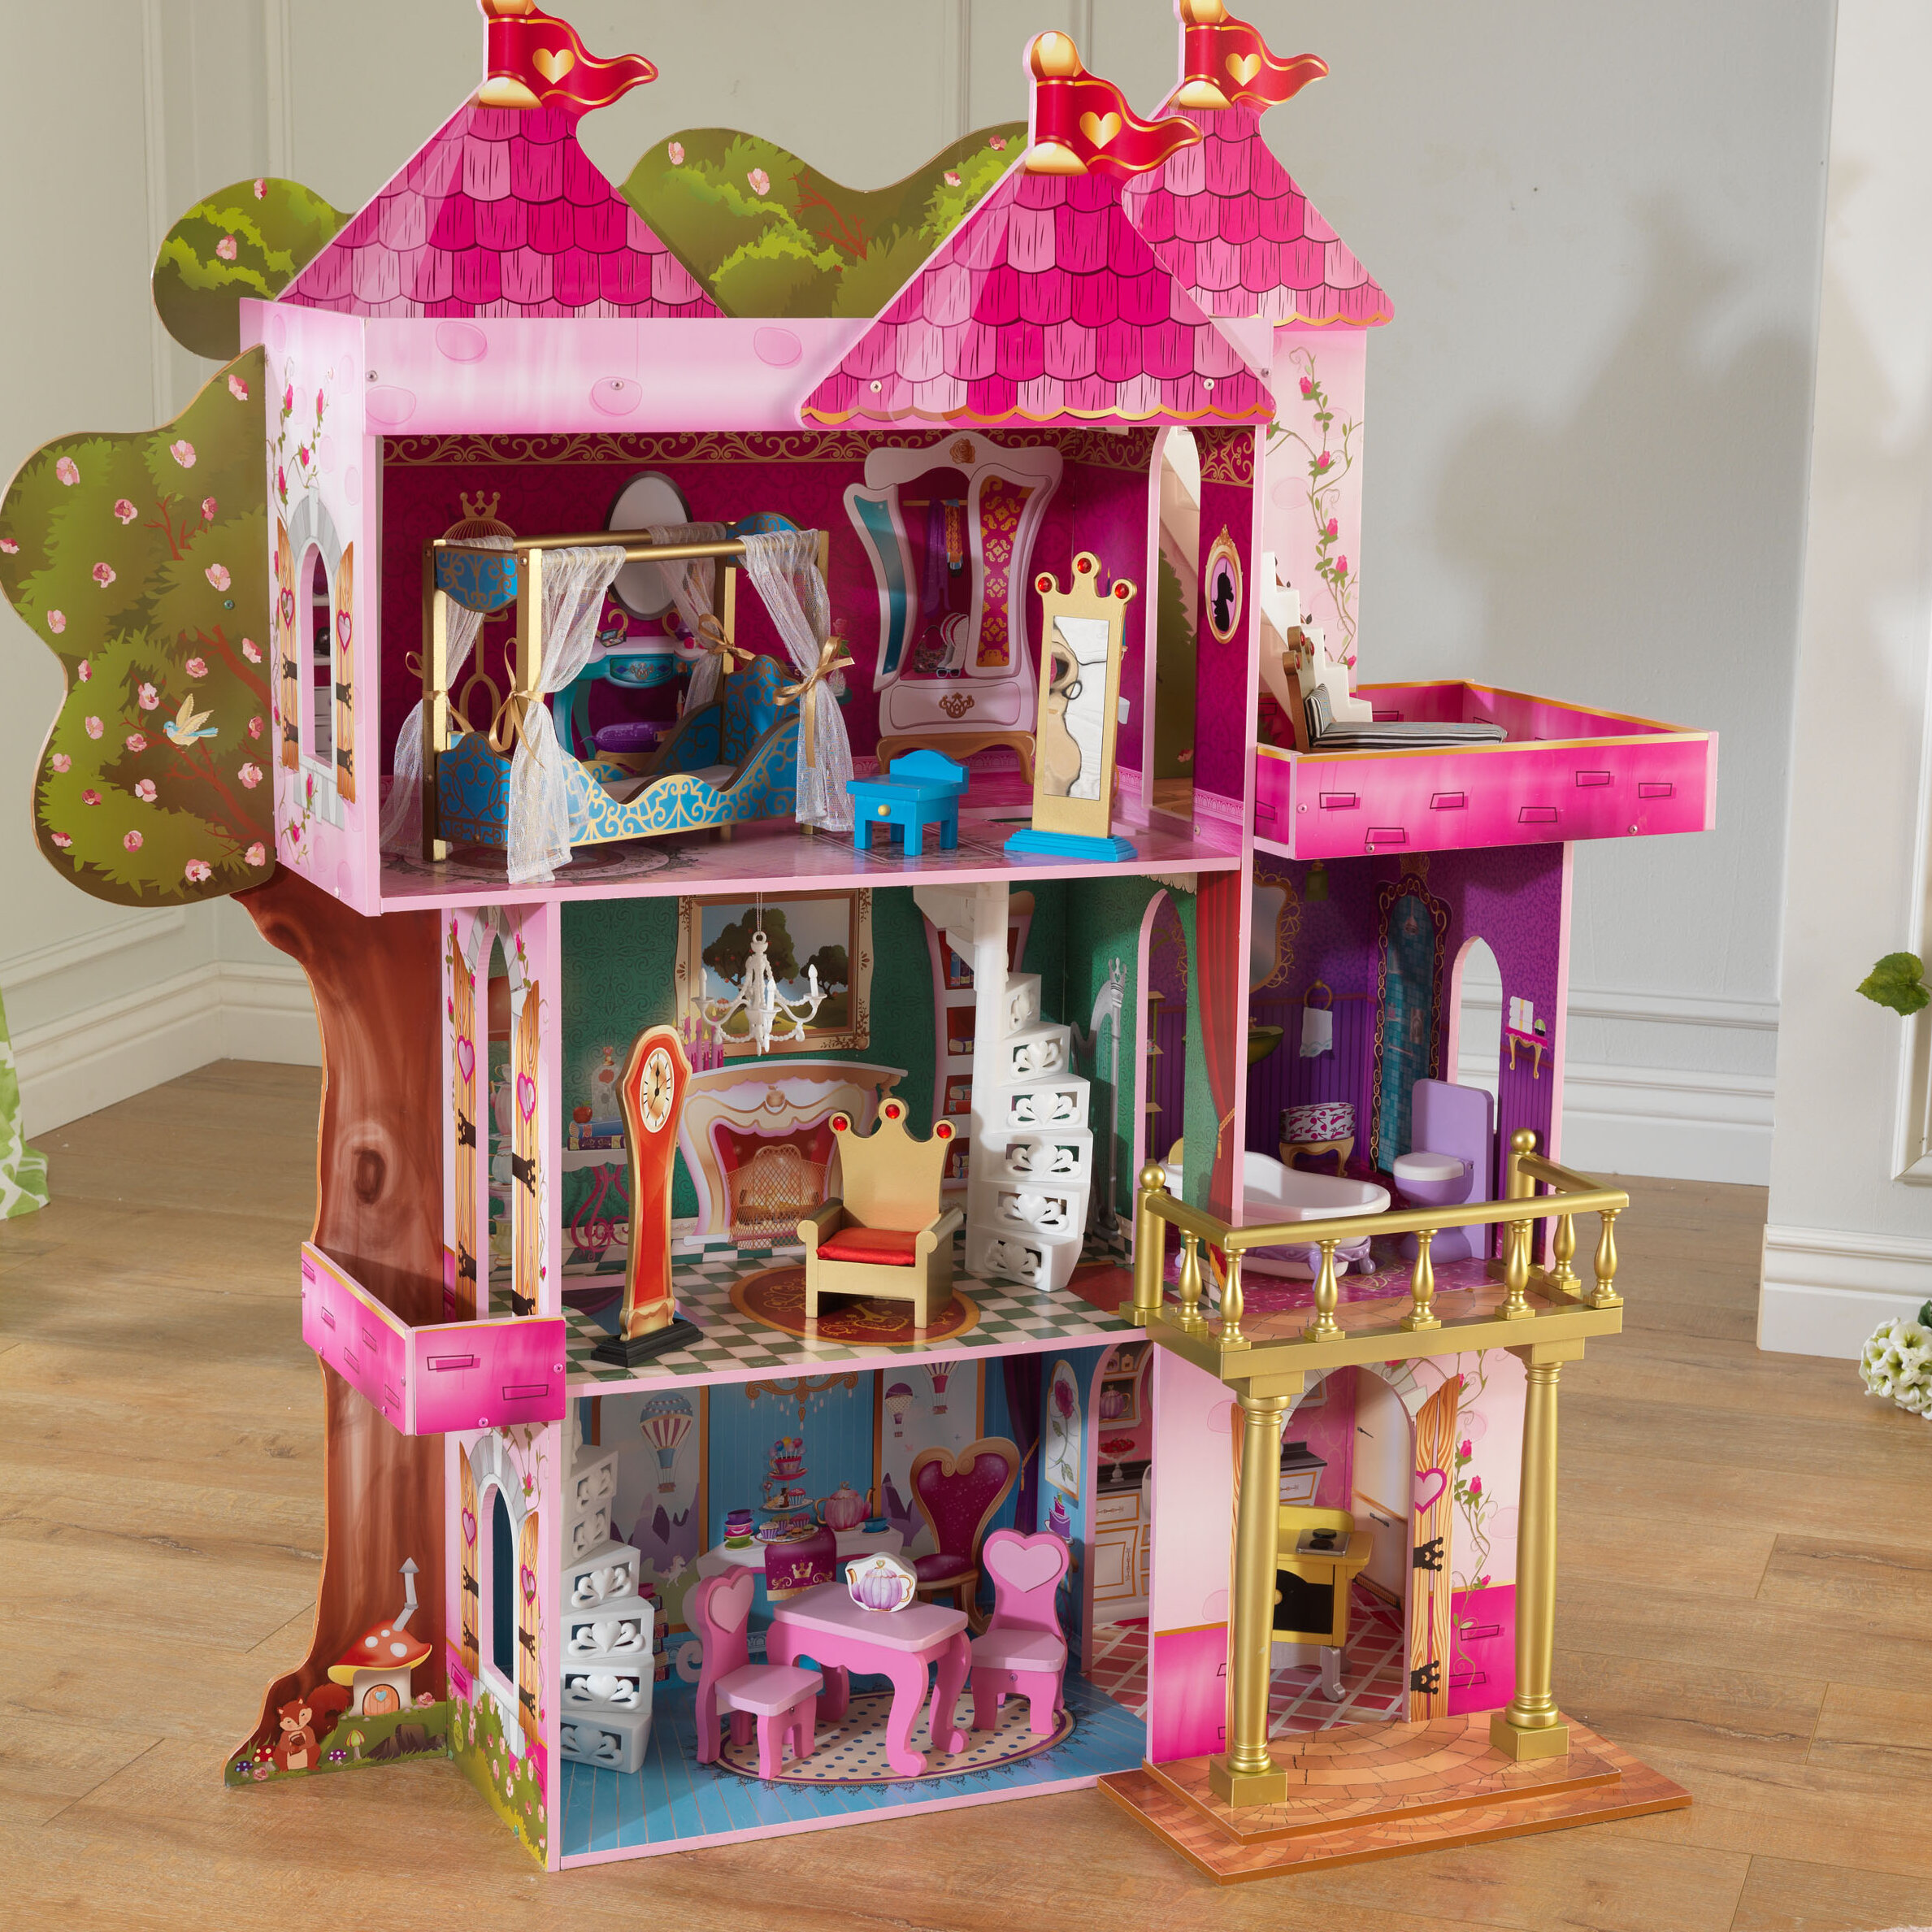 the magical dollhouse